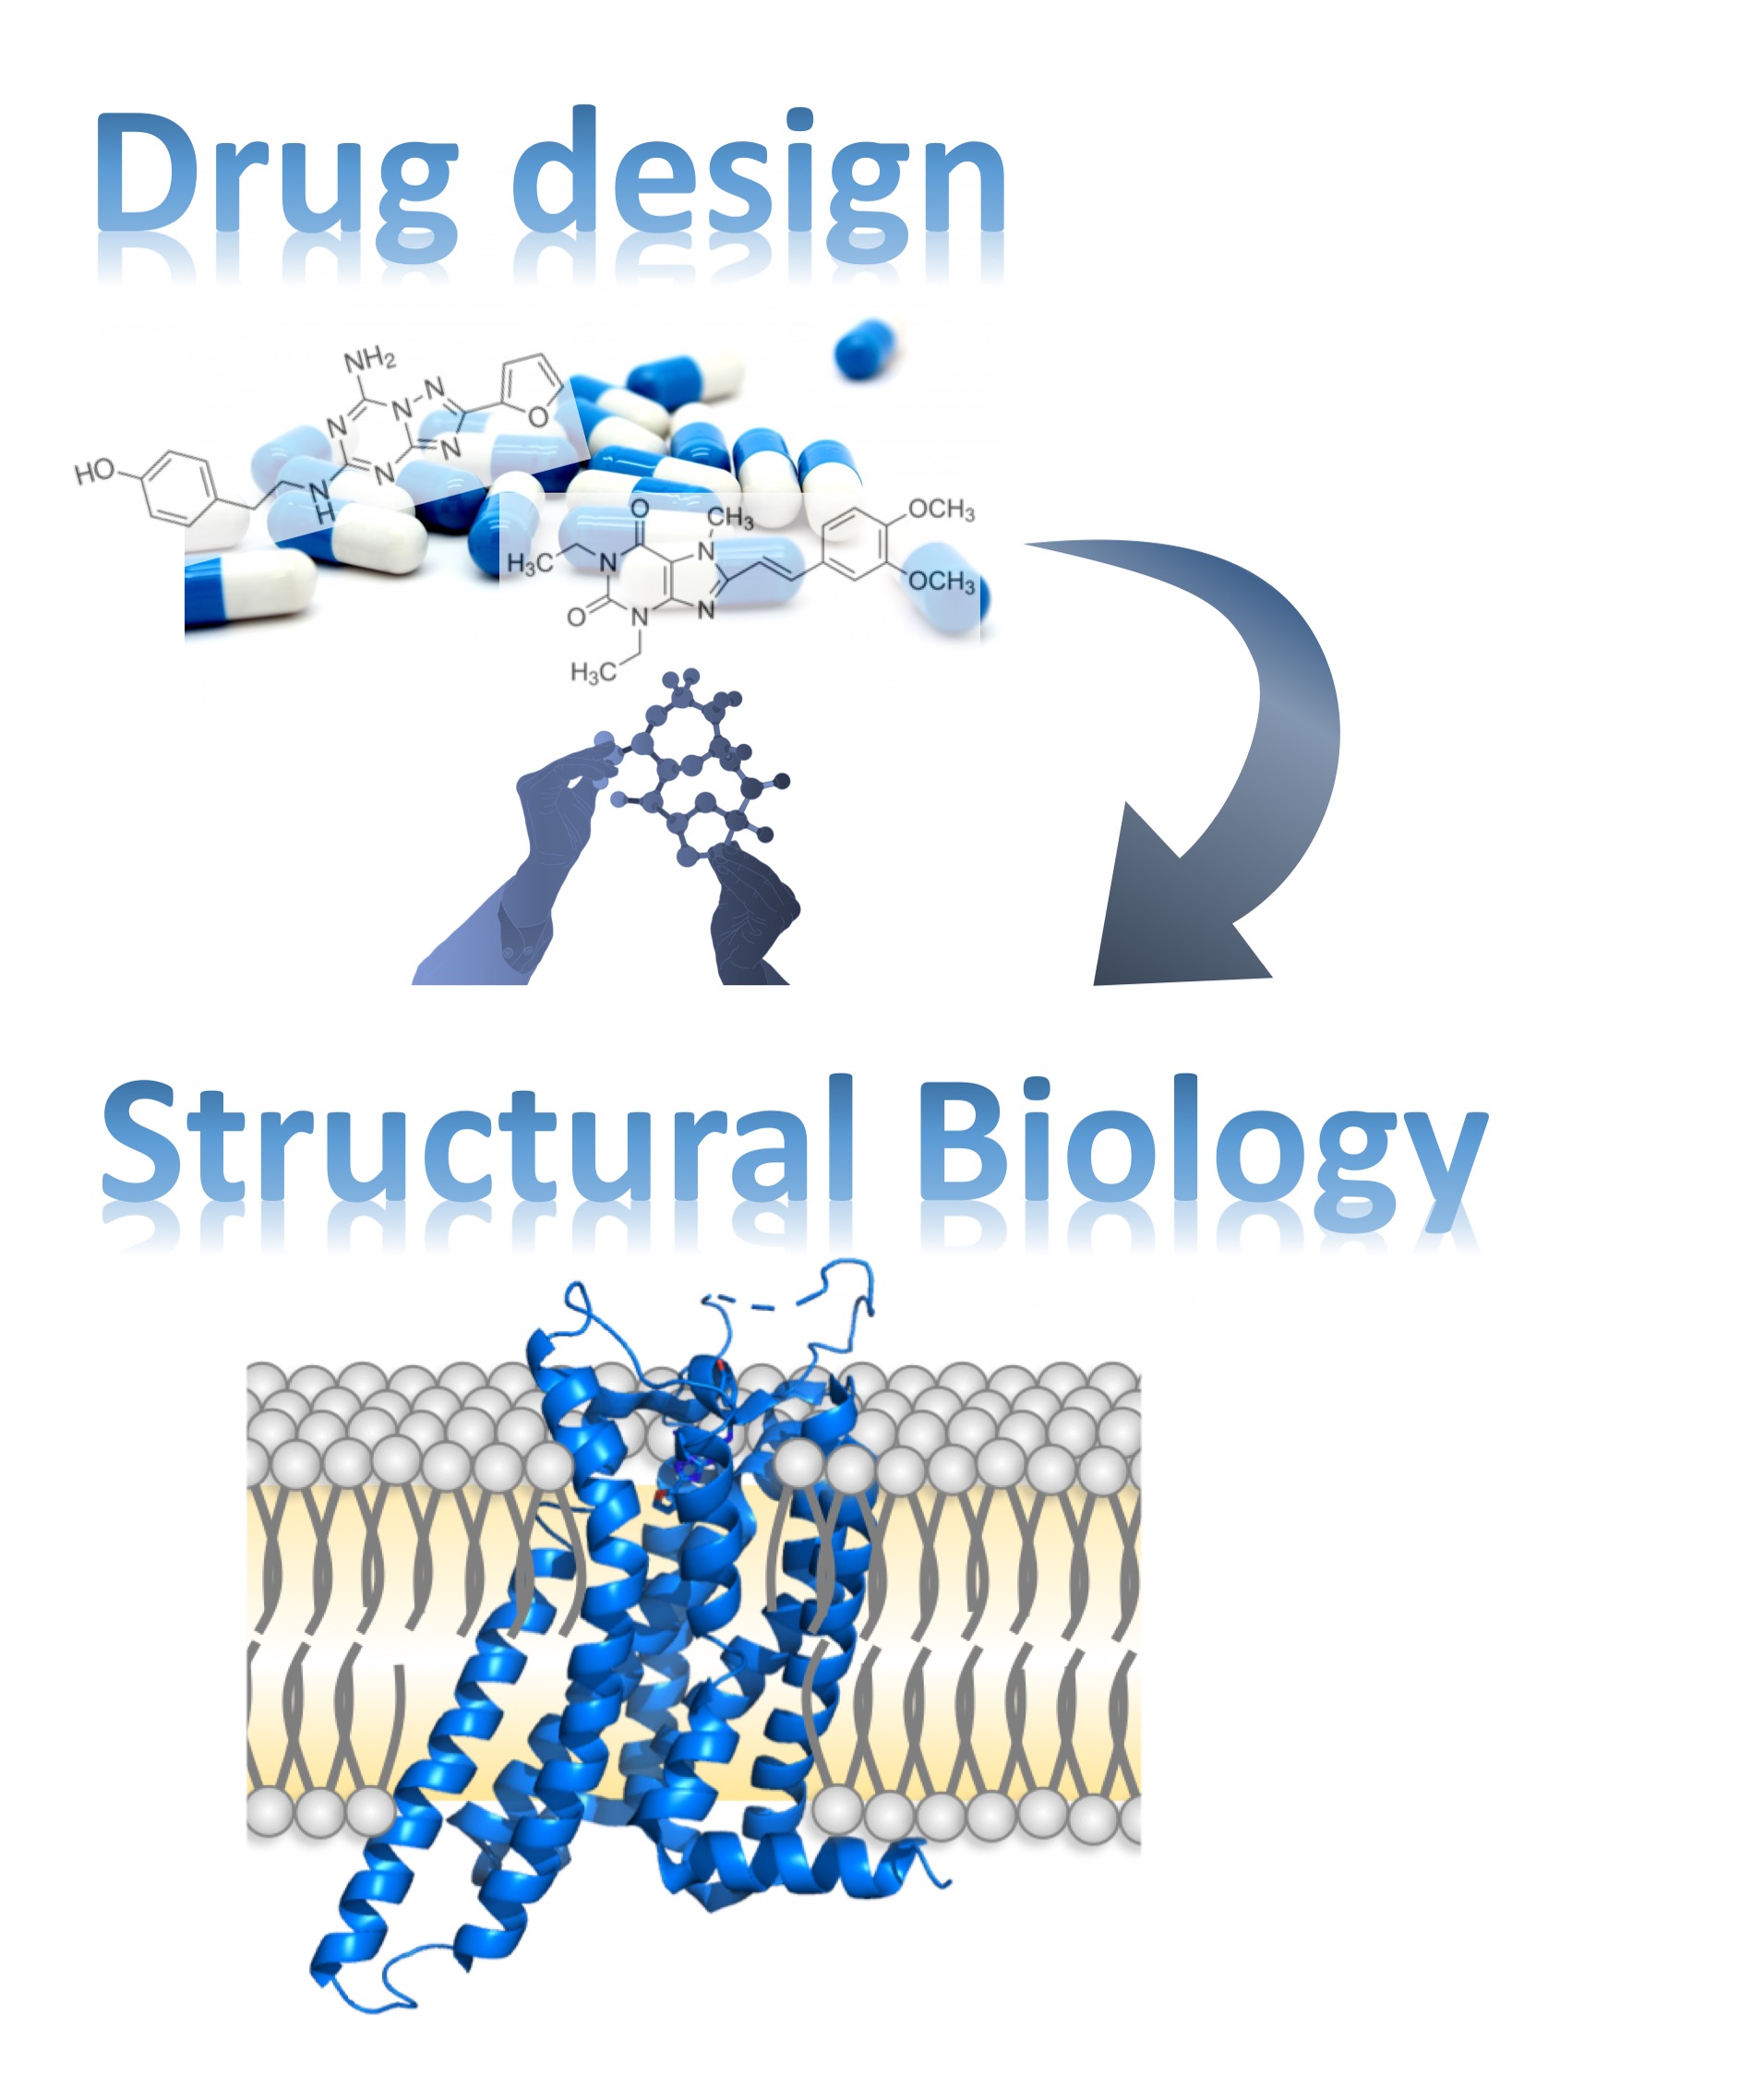 薬の標的となる膜タンパク質の立体構造解明と創薬